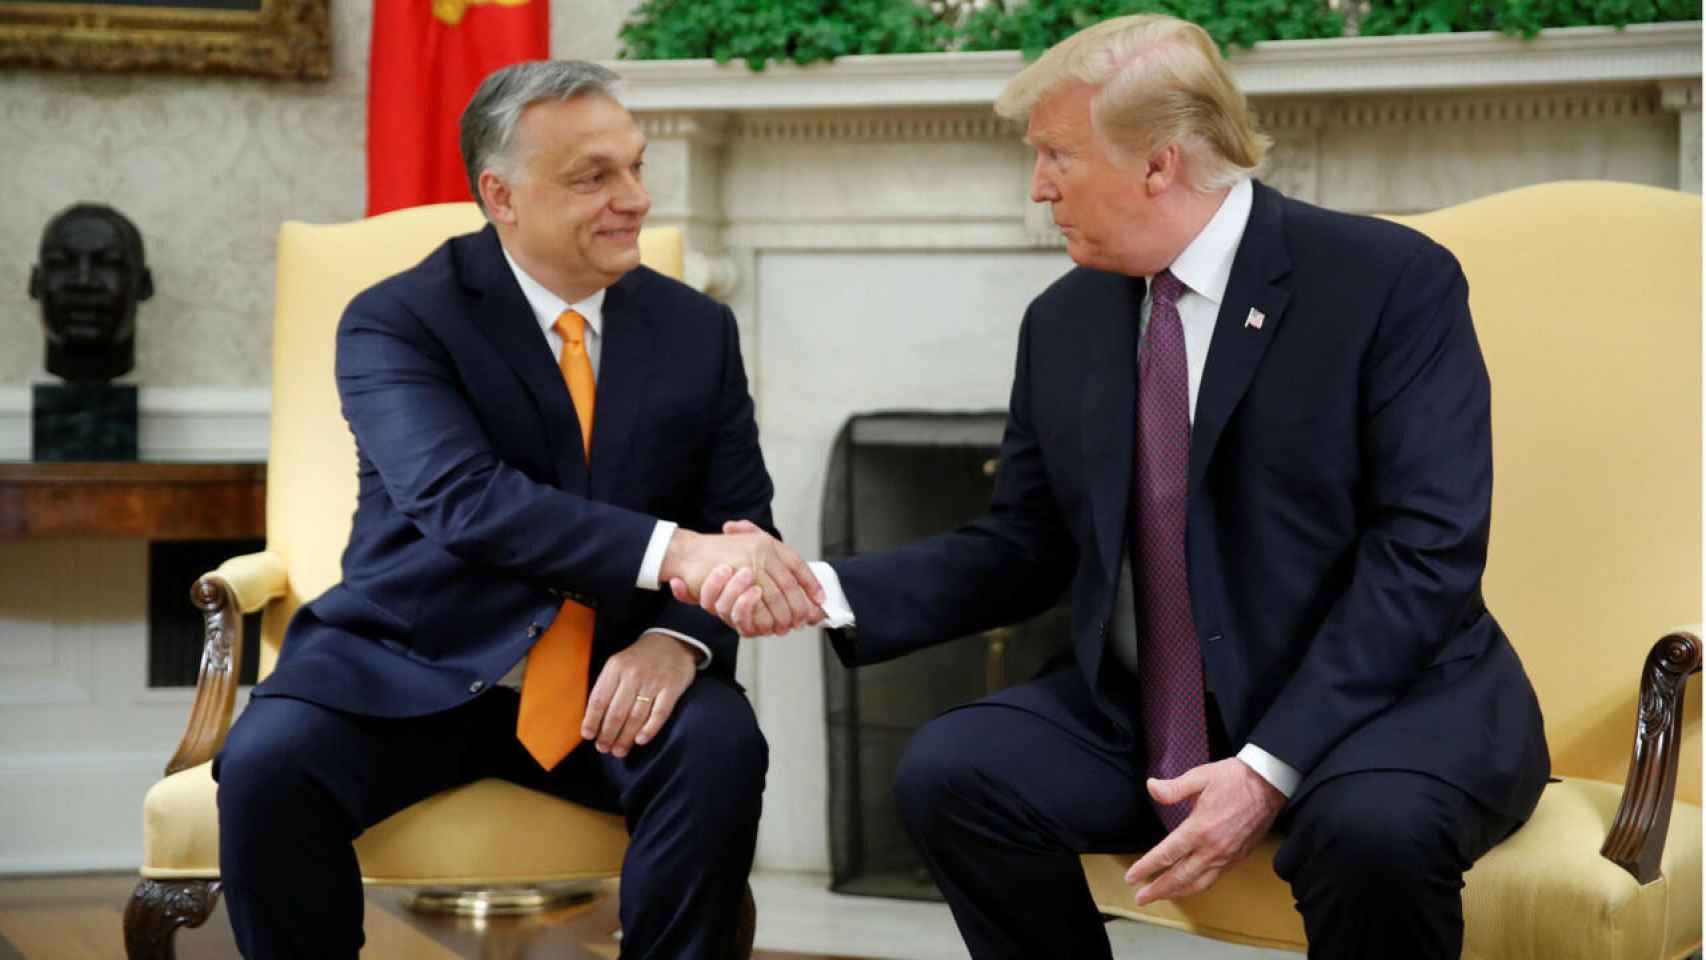 El presidente estadounidense Donald Trump (derecha) estrecha la mano del primer ministro húngaro Viktor Orban (izquierda) durante su encuentro en la Casa Blanca, en Washington, el 13 de mayo de 2019.